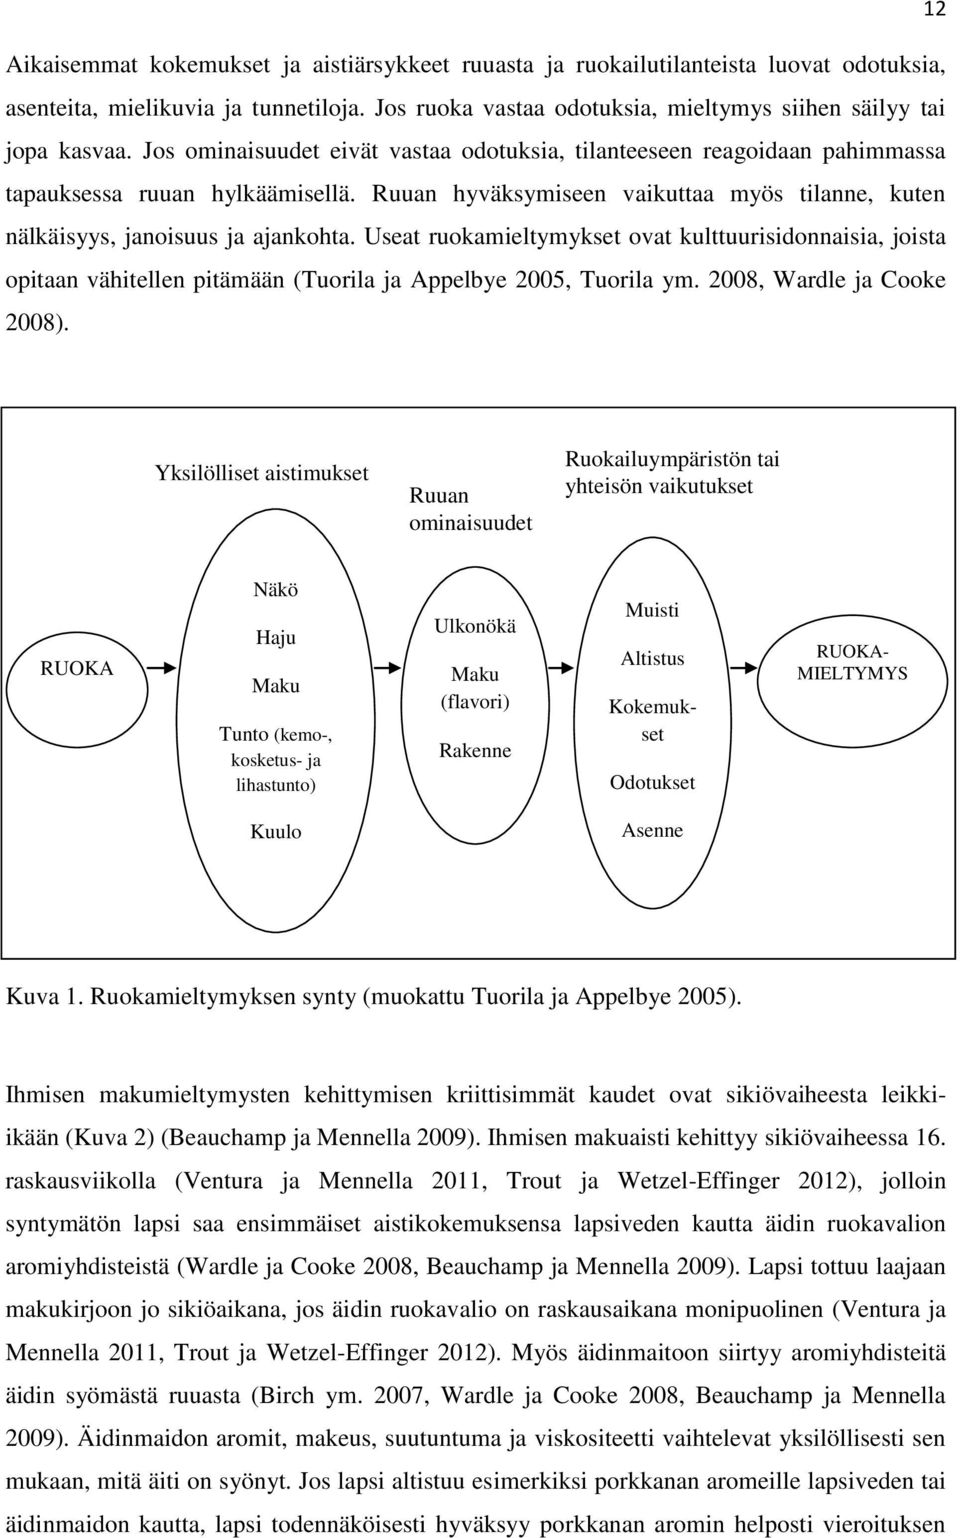 Useat ruokamieltymykset ovat kulttuurisidonnaisia, joista opitaan vähitellen pitämään (Tuorila ja Appelbye 2005, Tuorila ym. 2008, Wardle ja Cooke 2008).